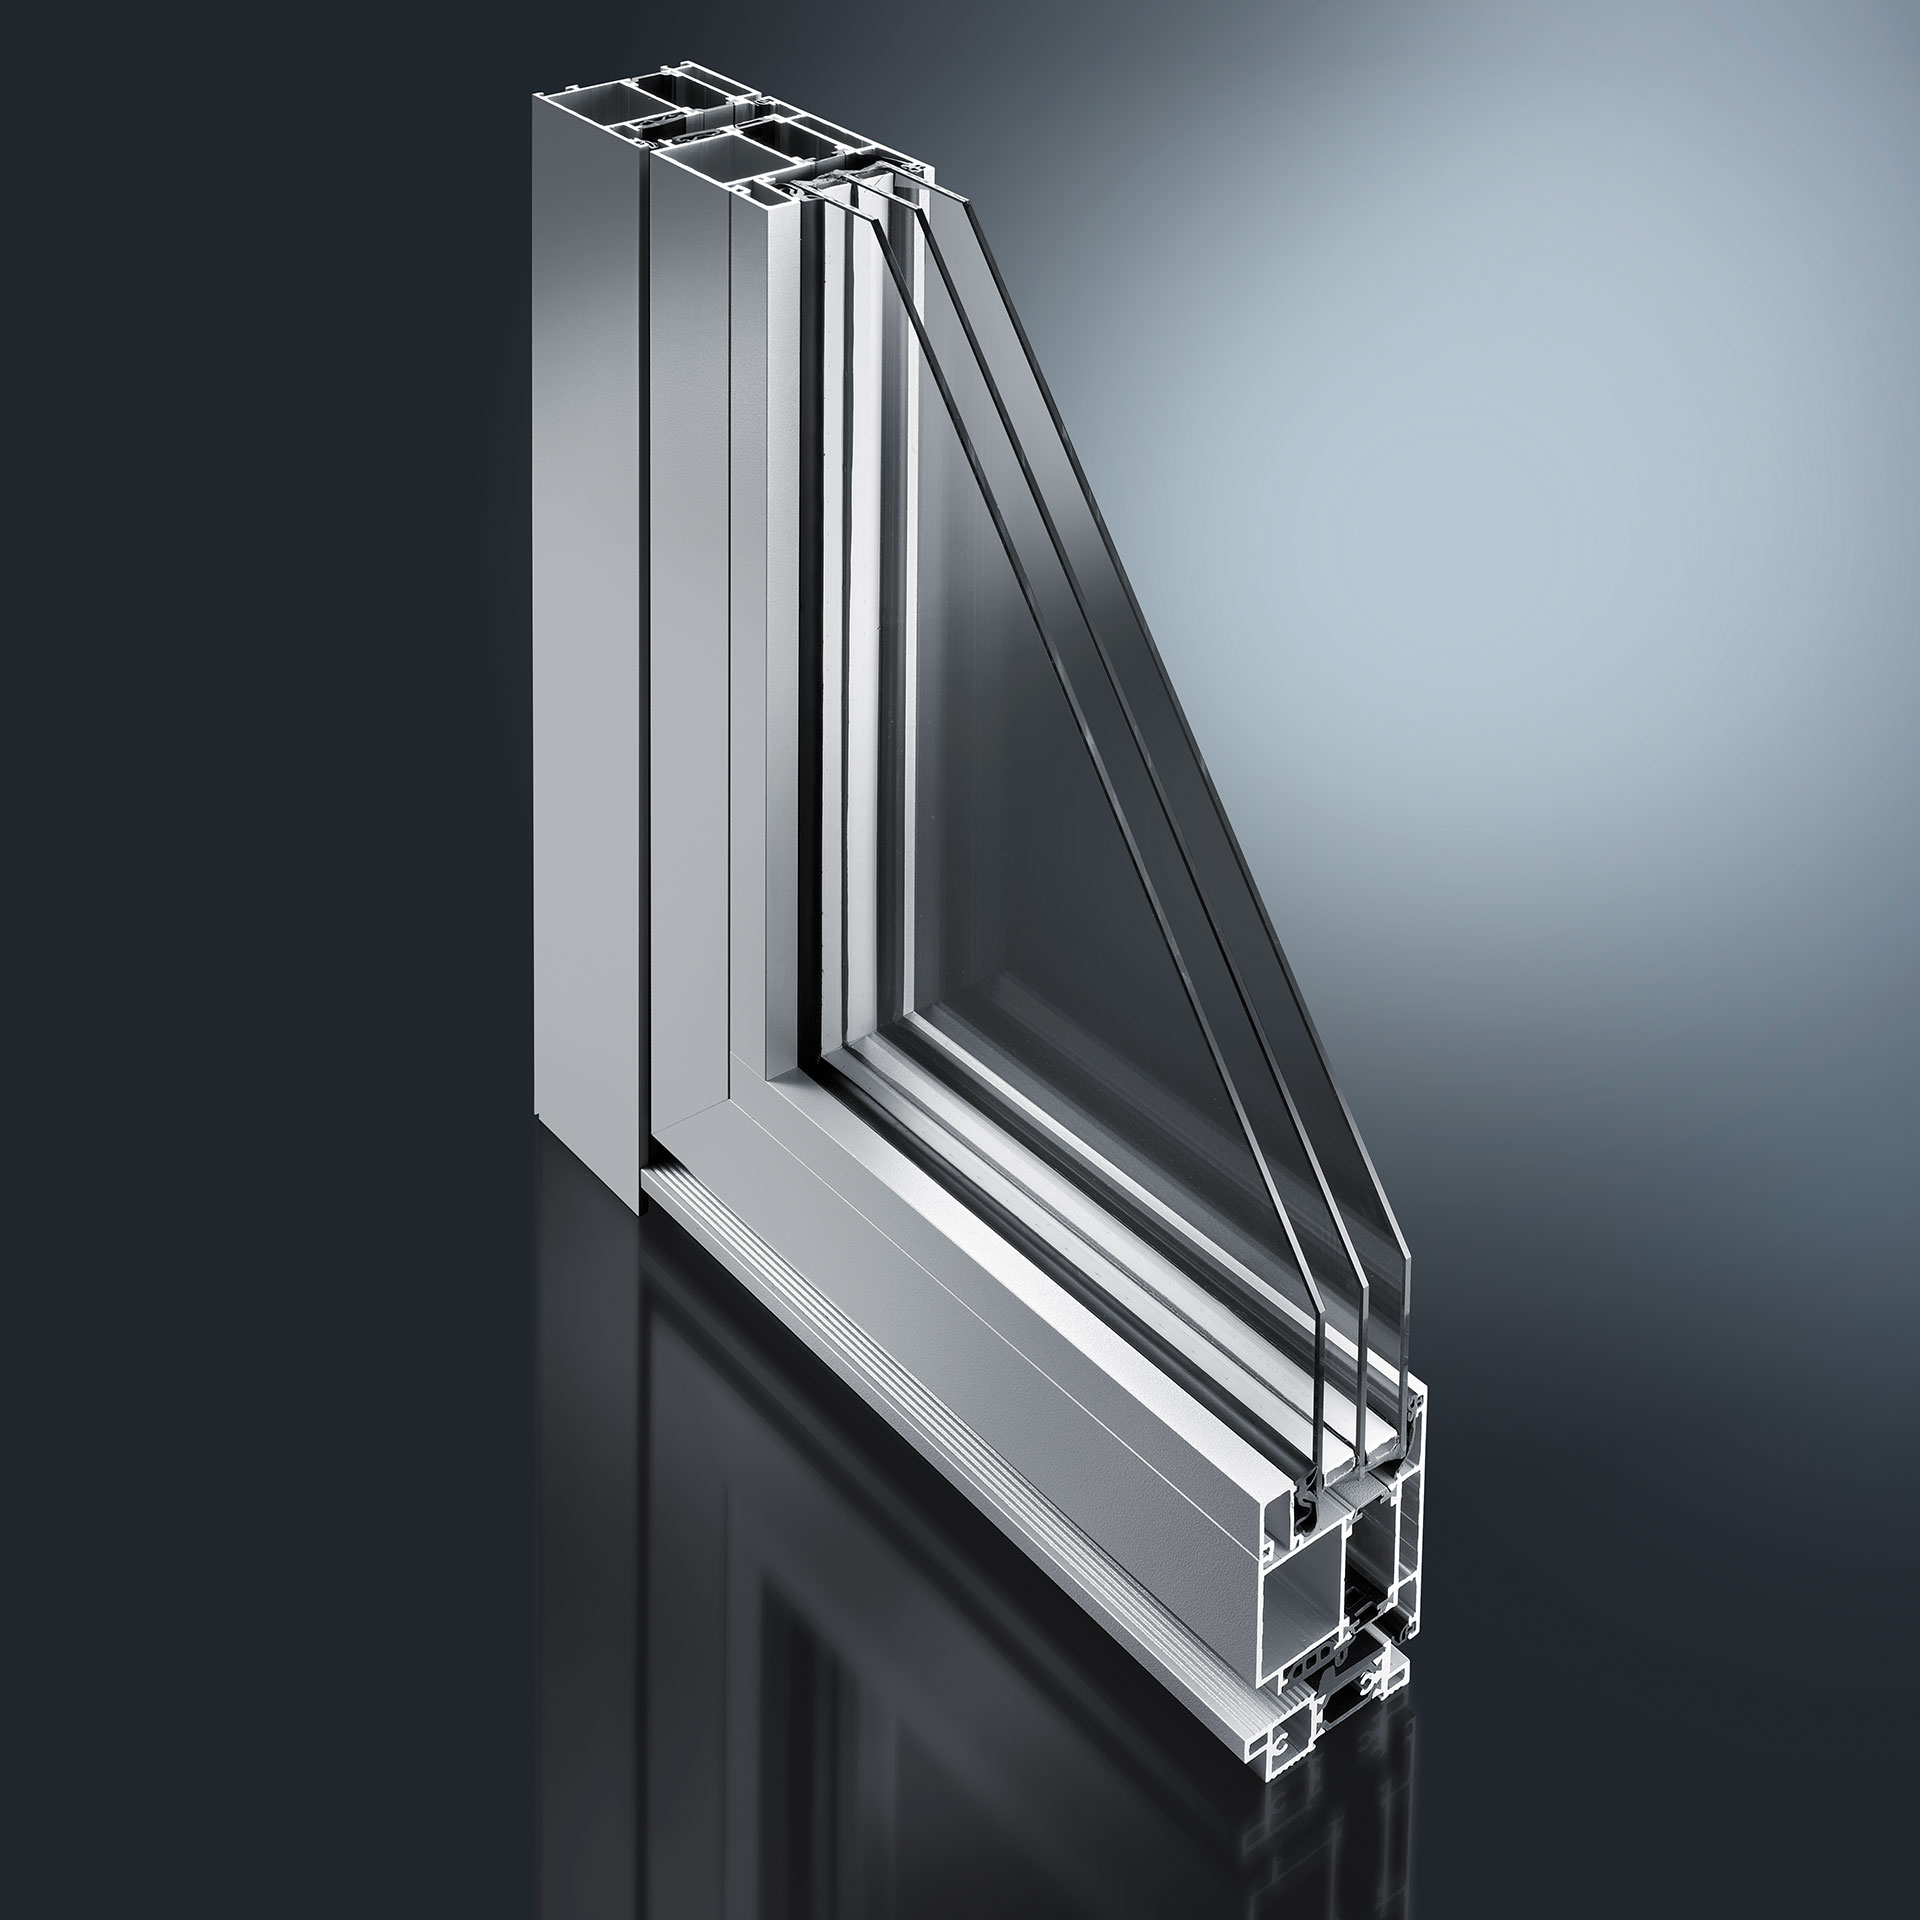 Profielsystemen voor voordeuren en deuren - we bieden aluminium buitenschalen voor houten deuren en moderne standaard aluminium modellen en profielsystemen voor scheidings- en wandelementen, ook voor binnentoepassingen.